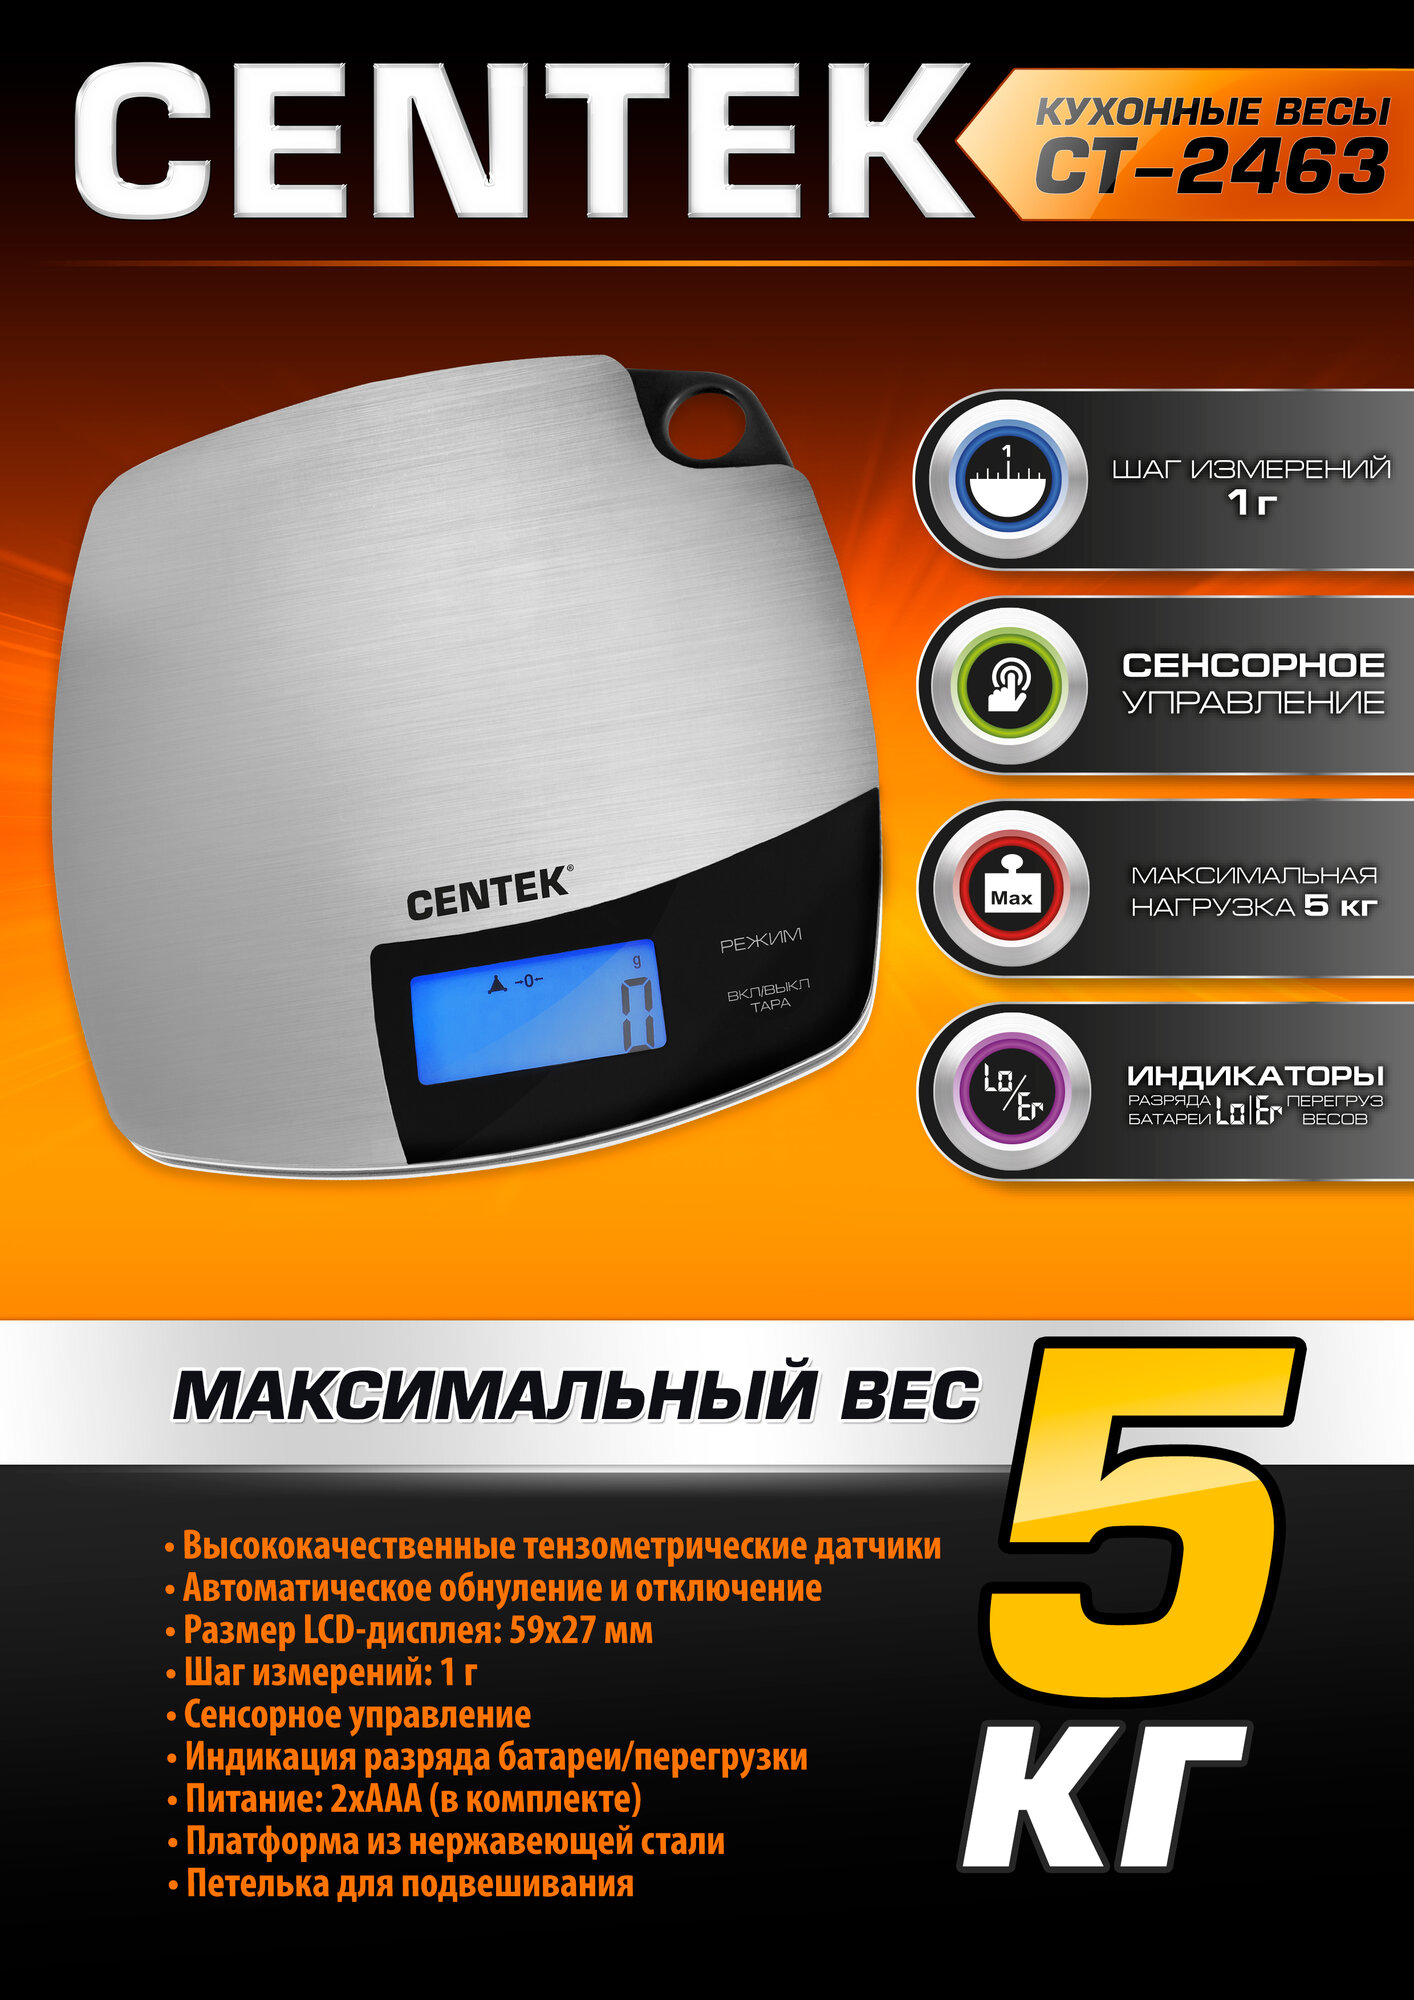 Весы кухонные электронные CENTEK CT-2463: сталь, сенсор, LCD- 59х27 с подсветкой, t° в комнате, max 5кг, шаг 1г